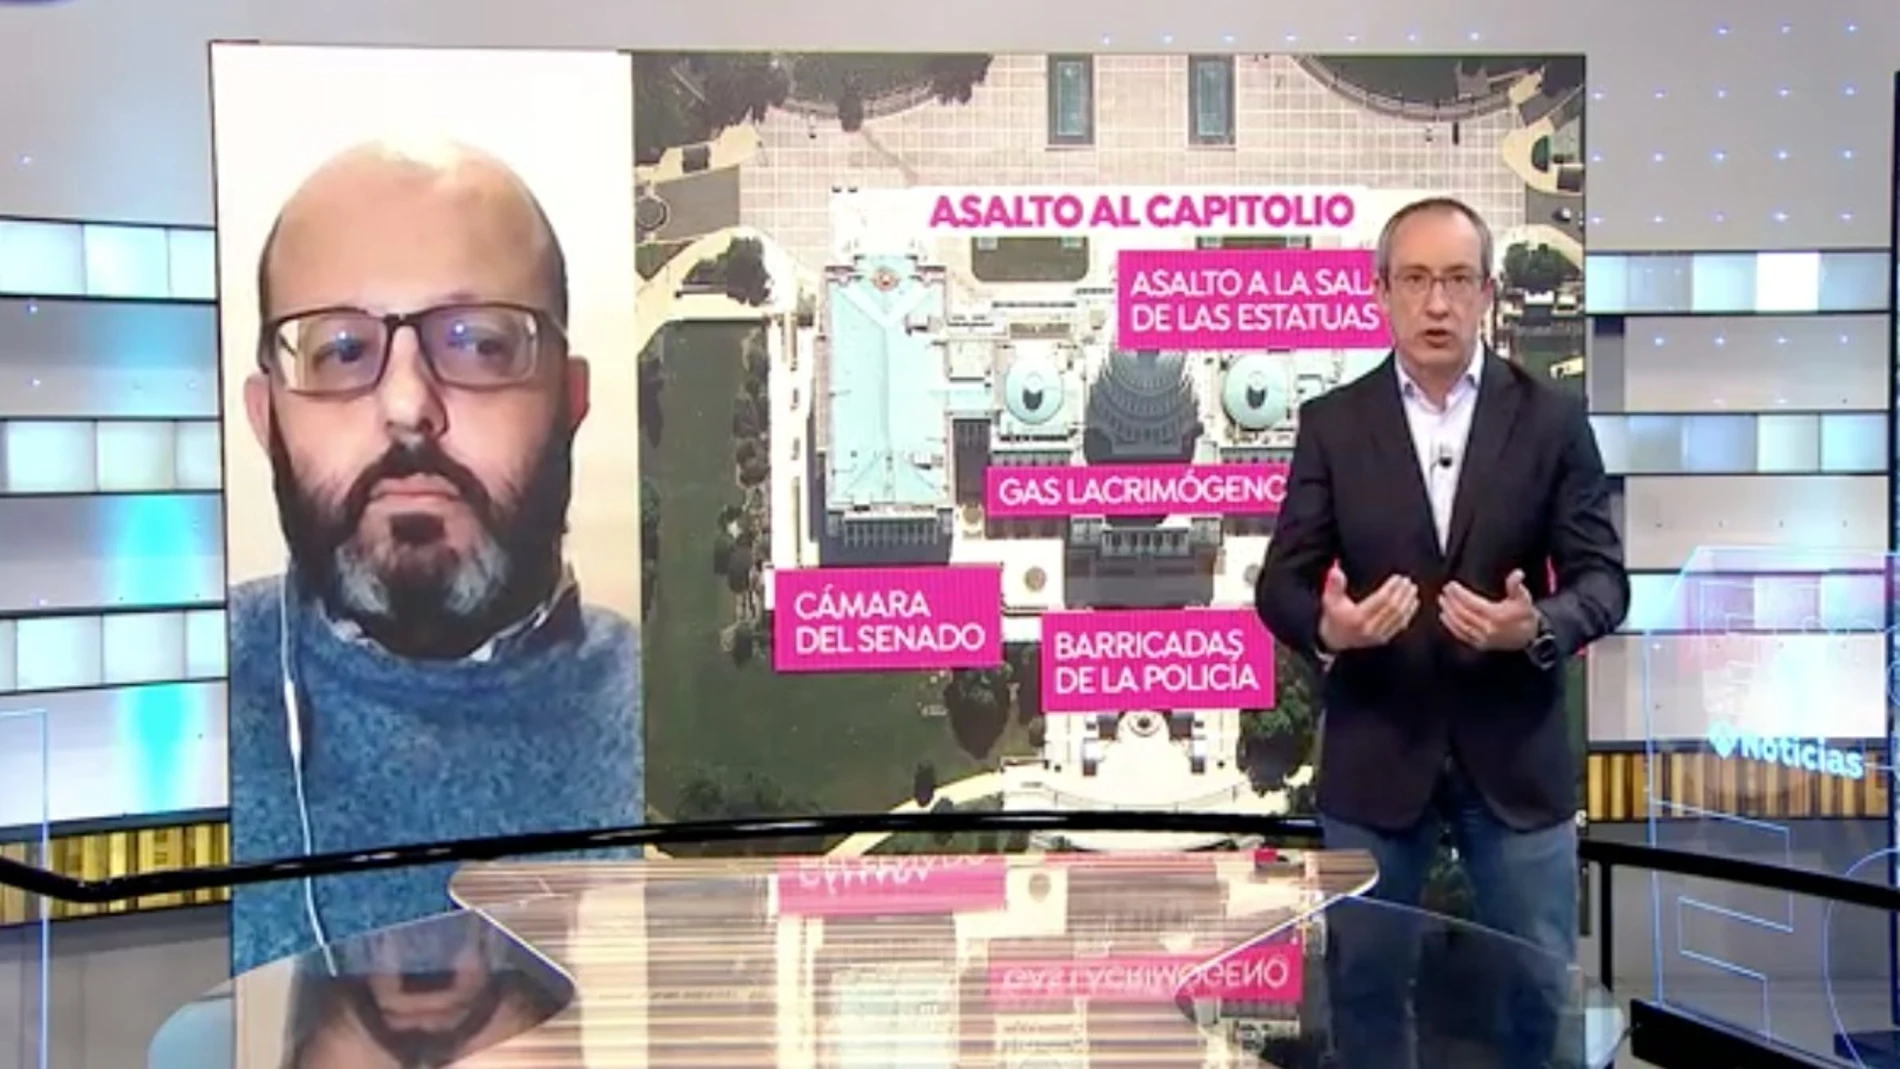 Fernando Cocho, experto en seguridad, habla sobre el asalto al Capitolio de EEUU